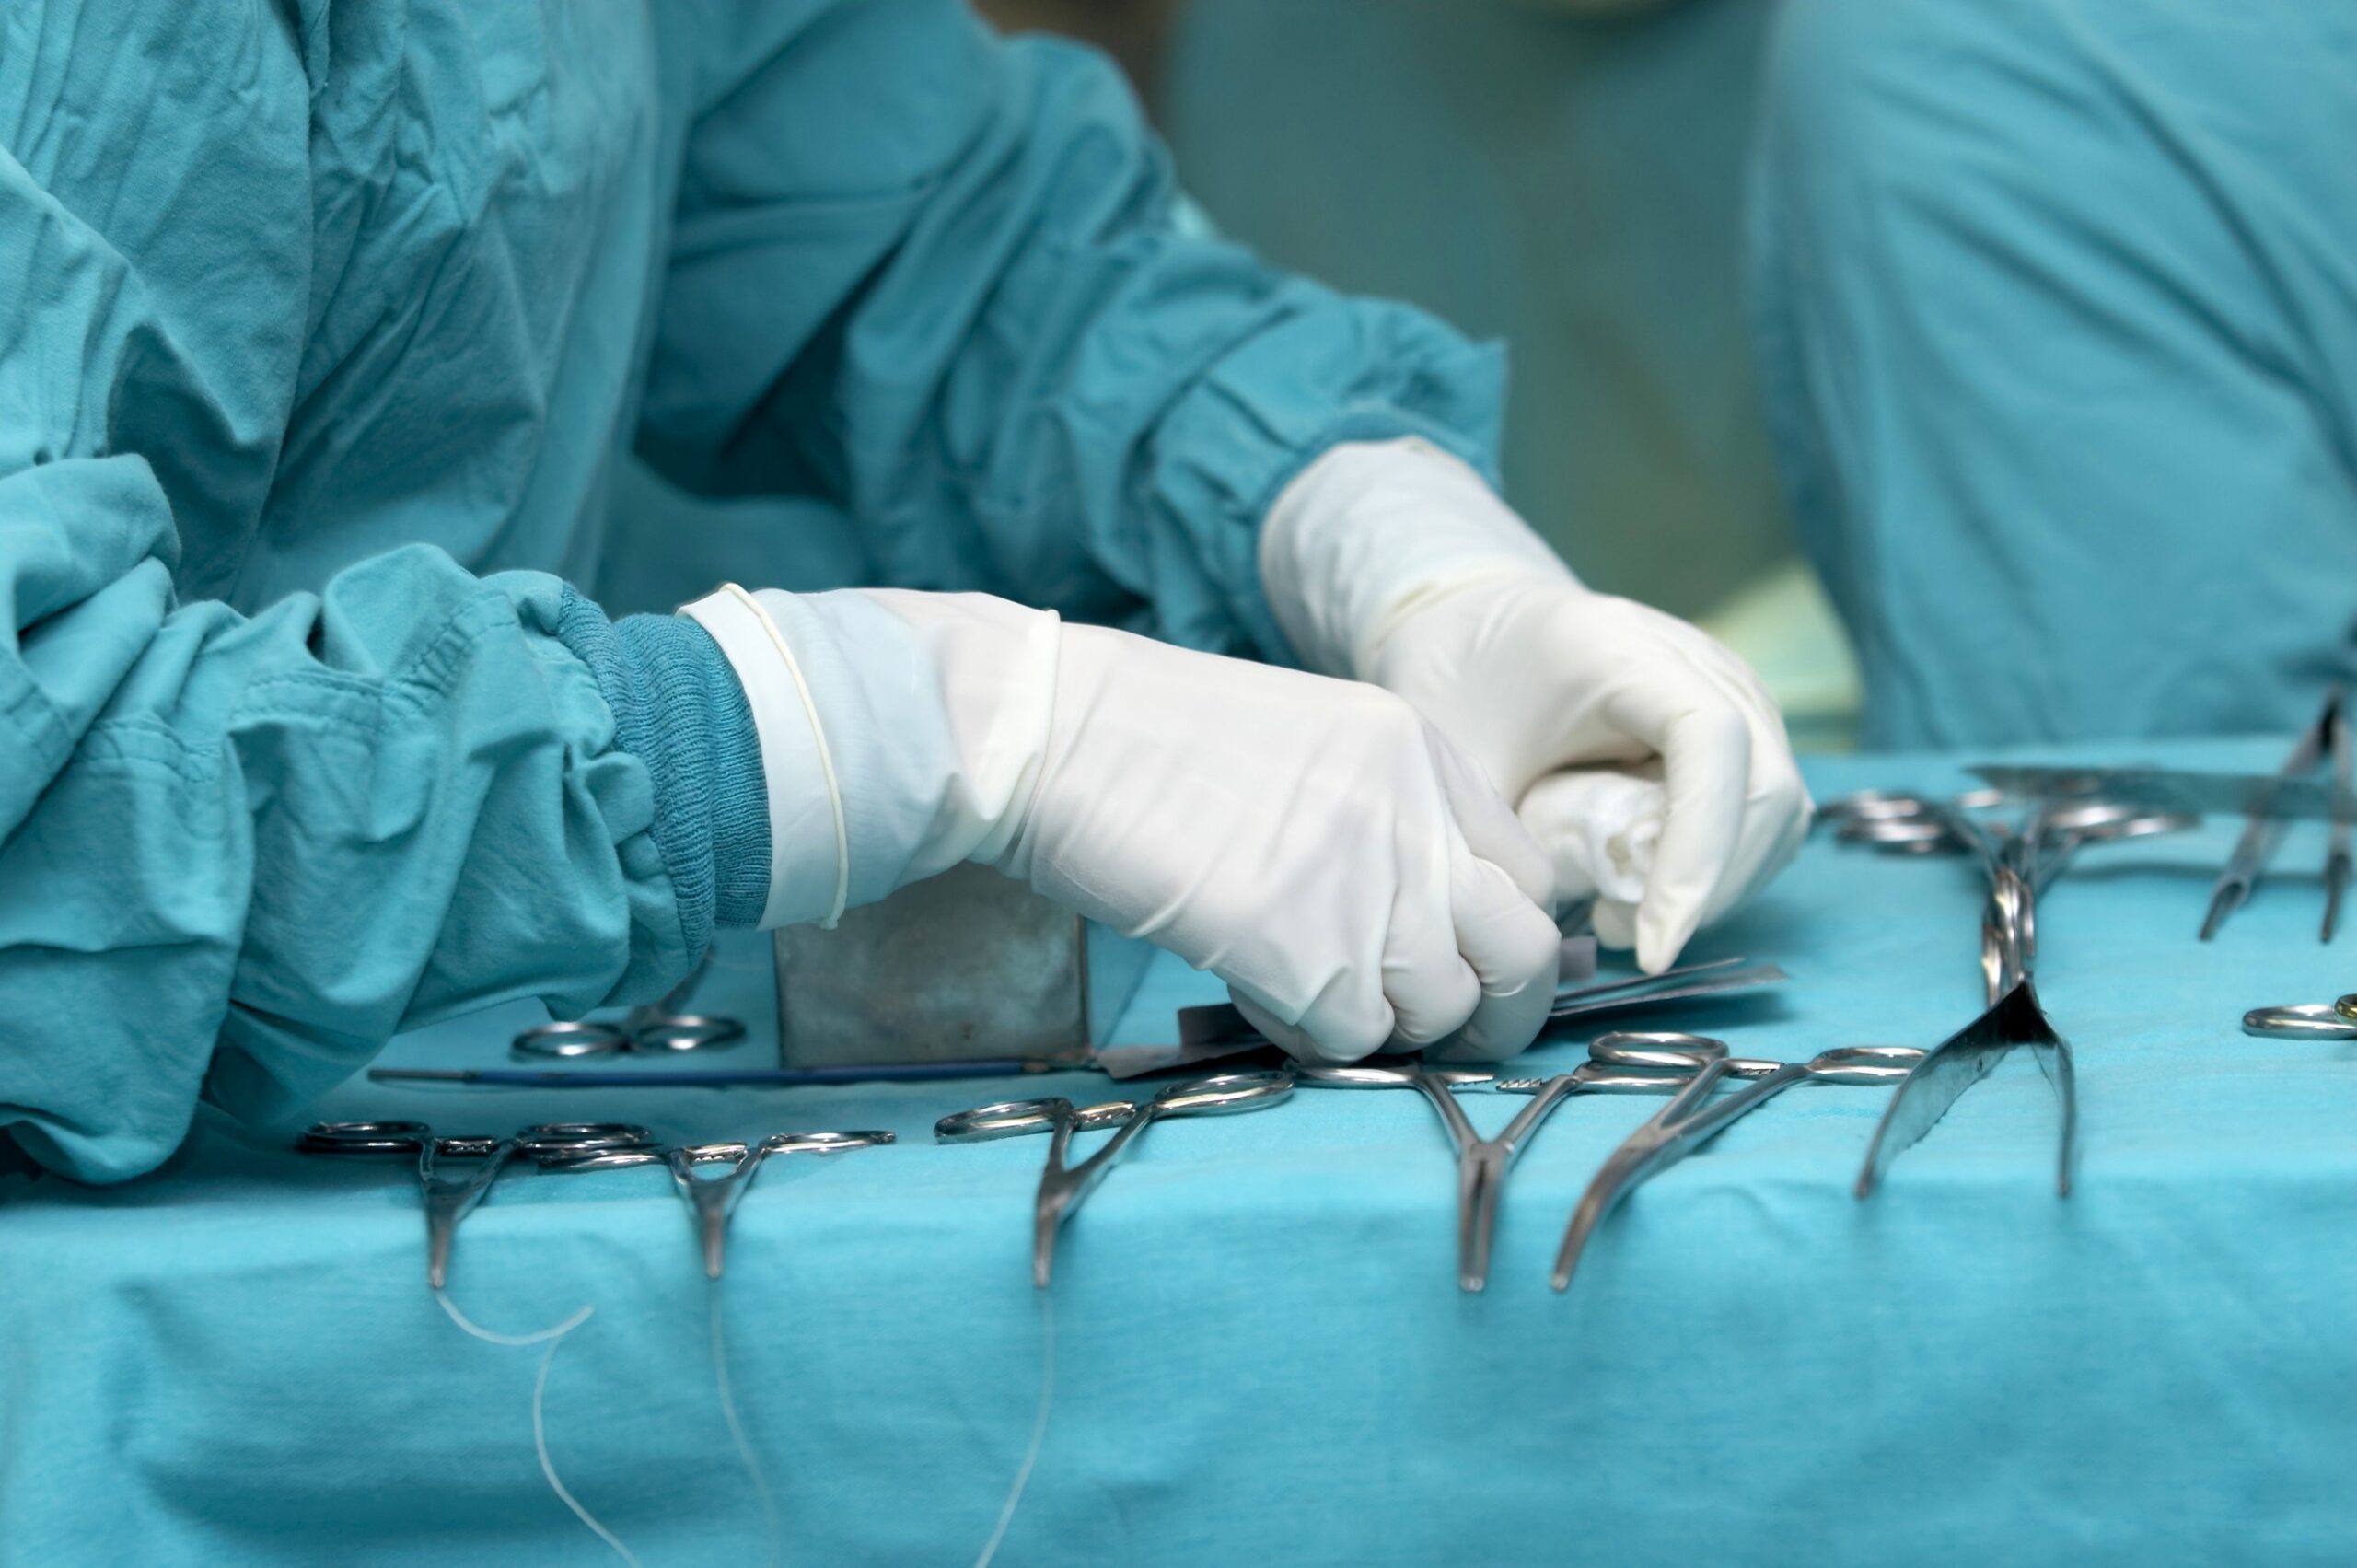 «Дырка образовалась сама» — мурманский хирург избежал наказания за смерть пациента из-за истечения сроков давности по делу